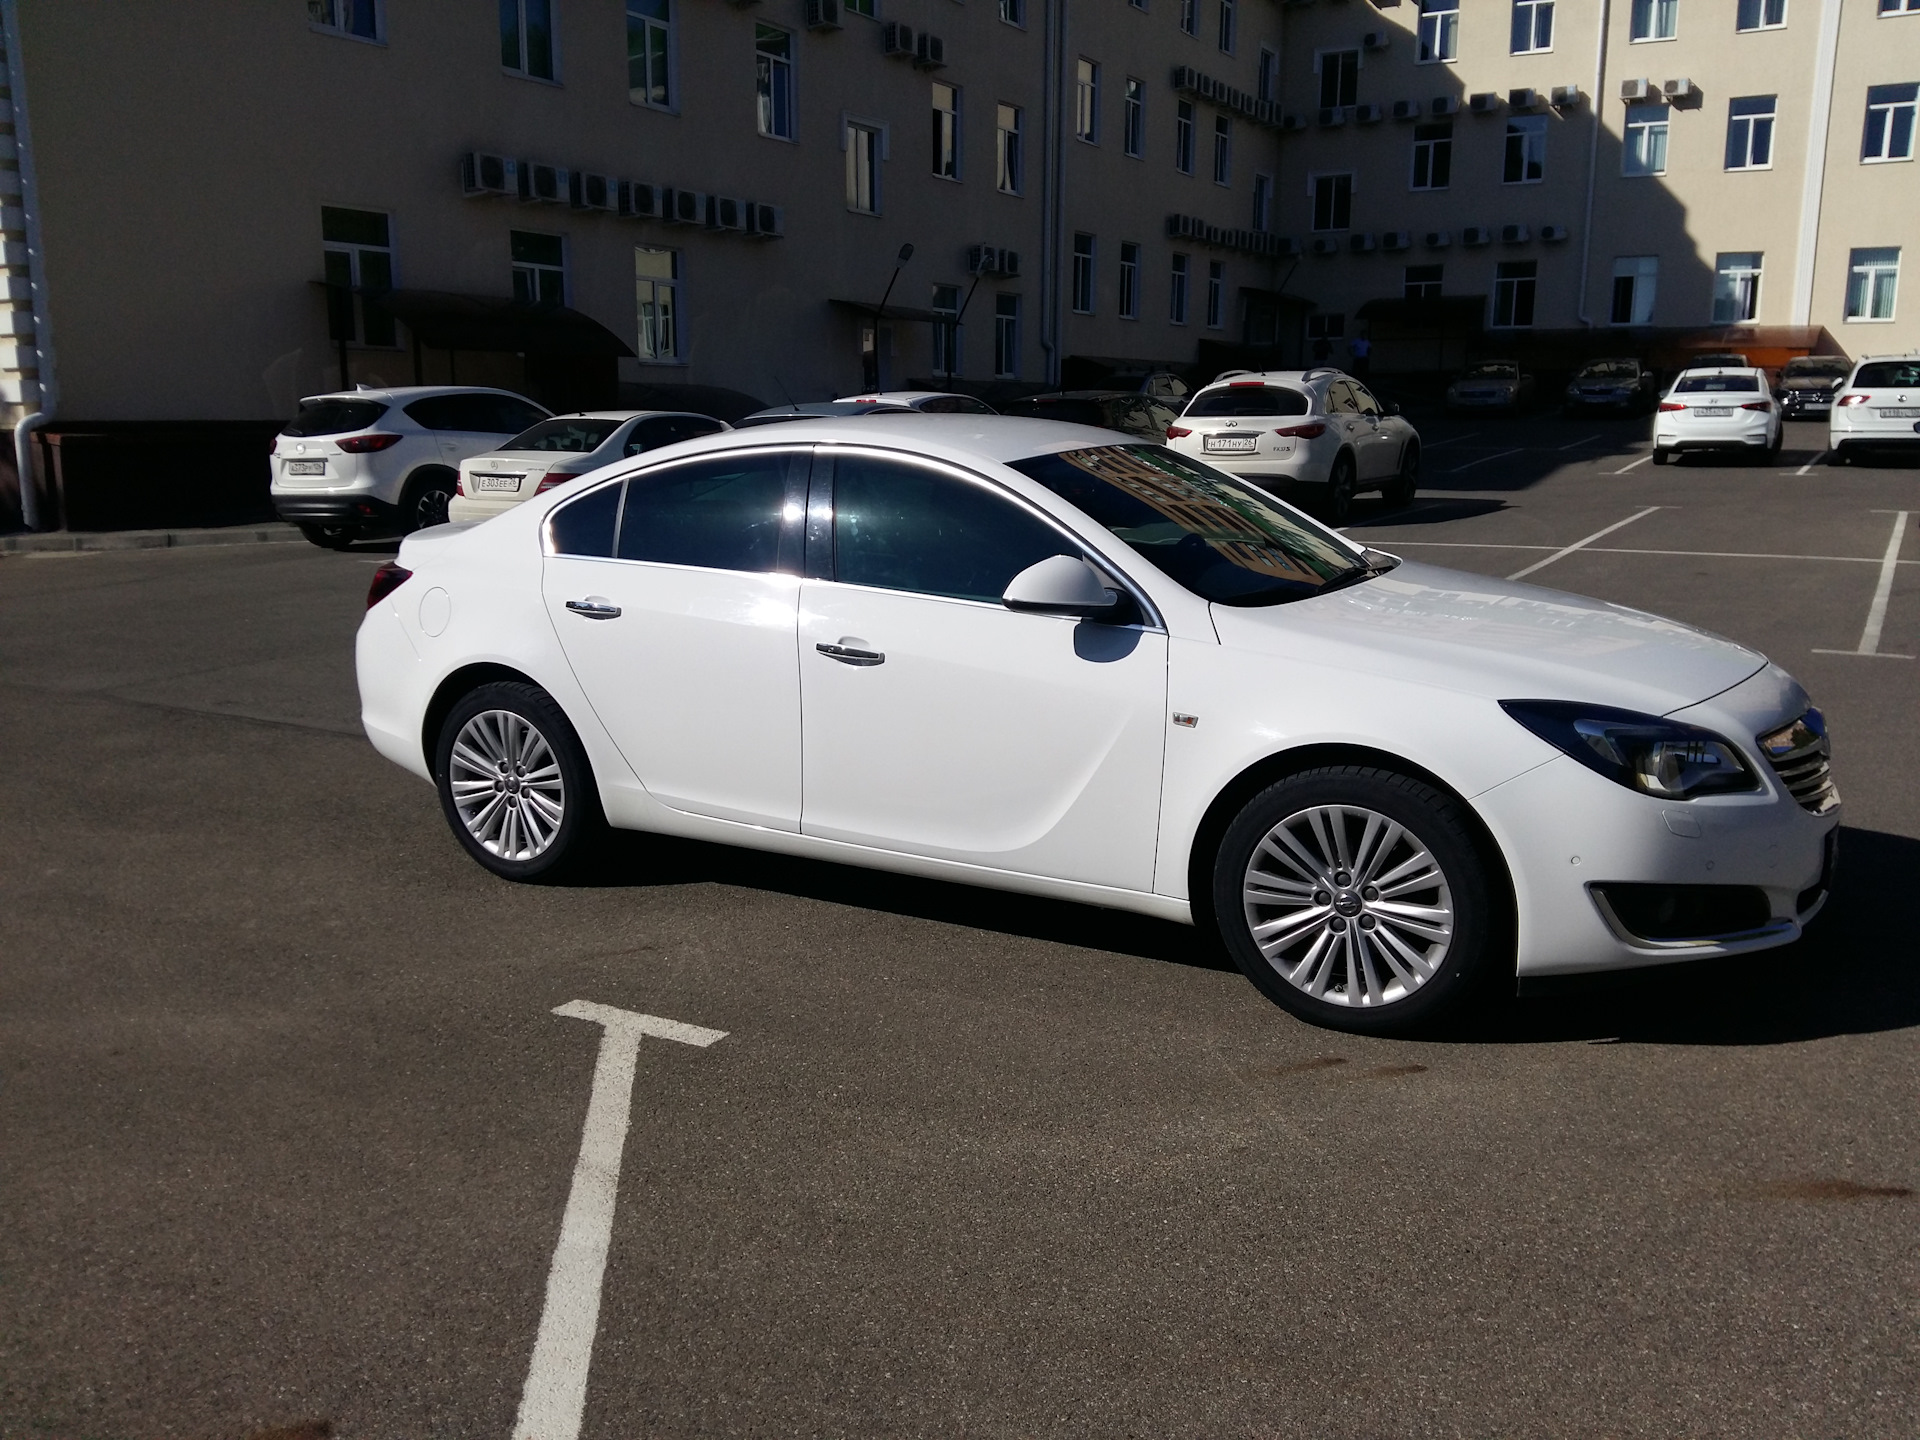 Opel insignia 1.8. Opel Insignia белая. Опель Инсигния 2014 белая. Opel Insignia 2014 1.8 МТ. Opel Insignia белый перламутр.